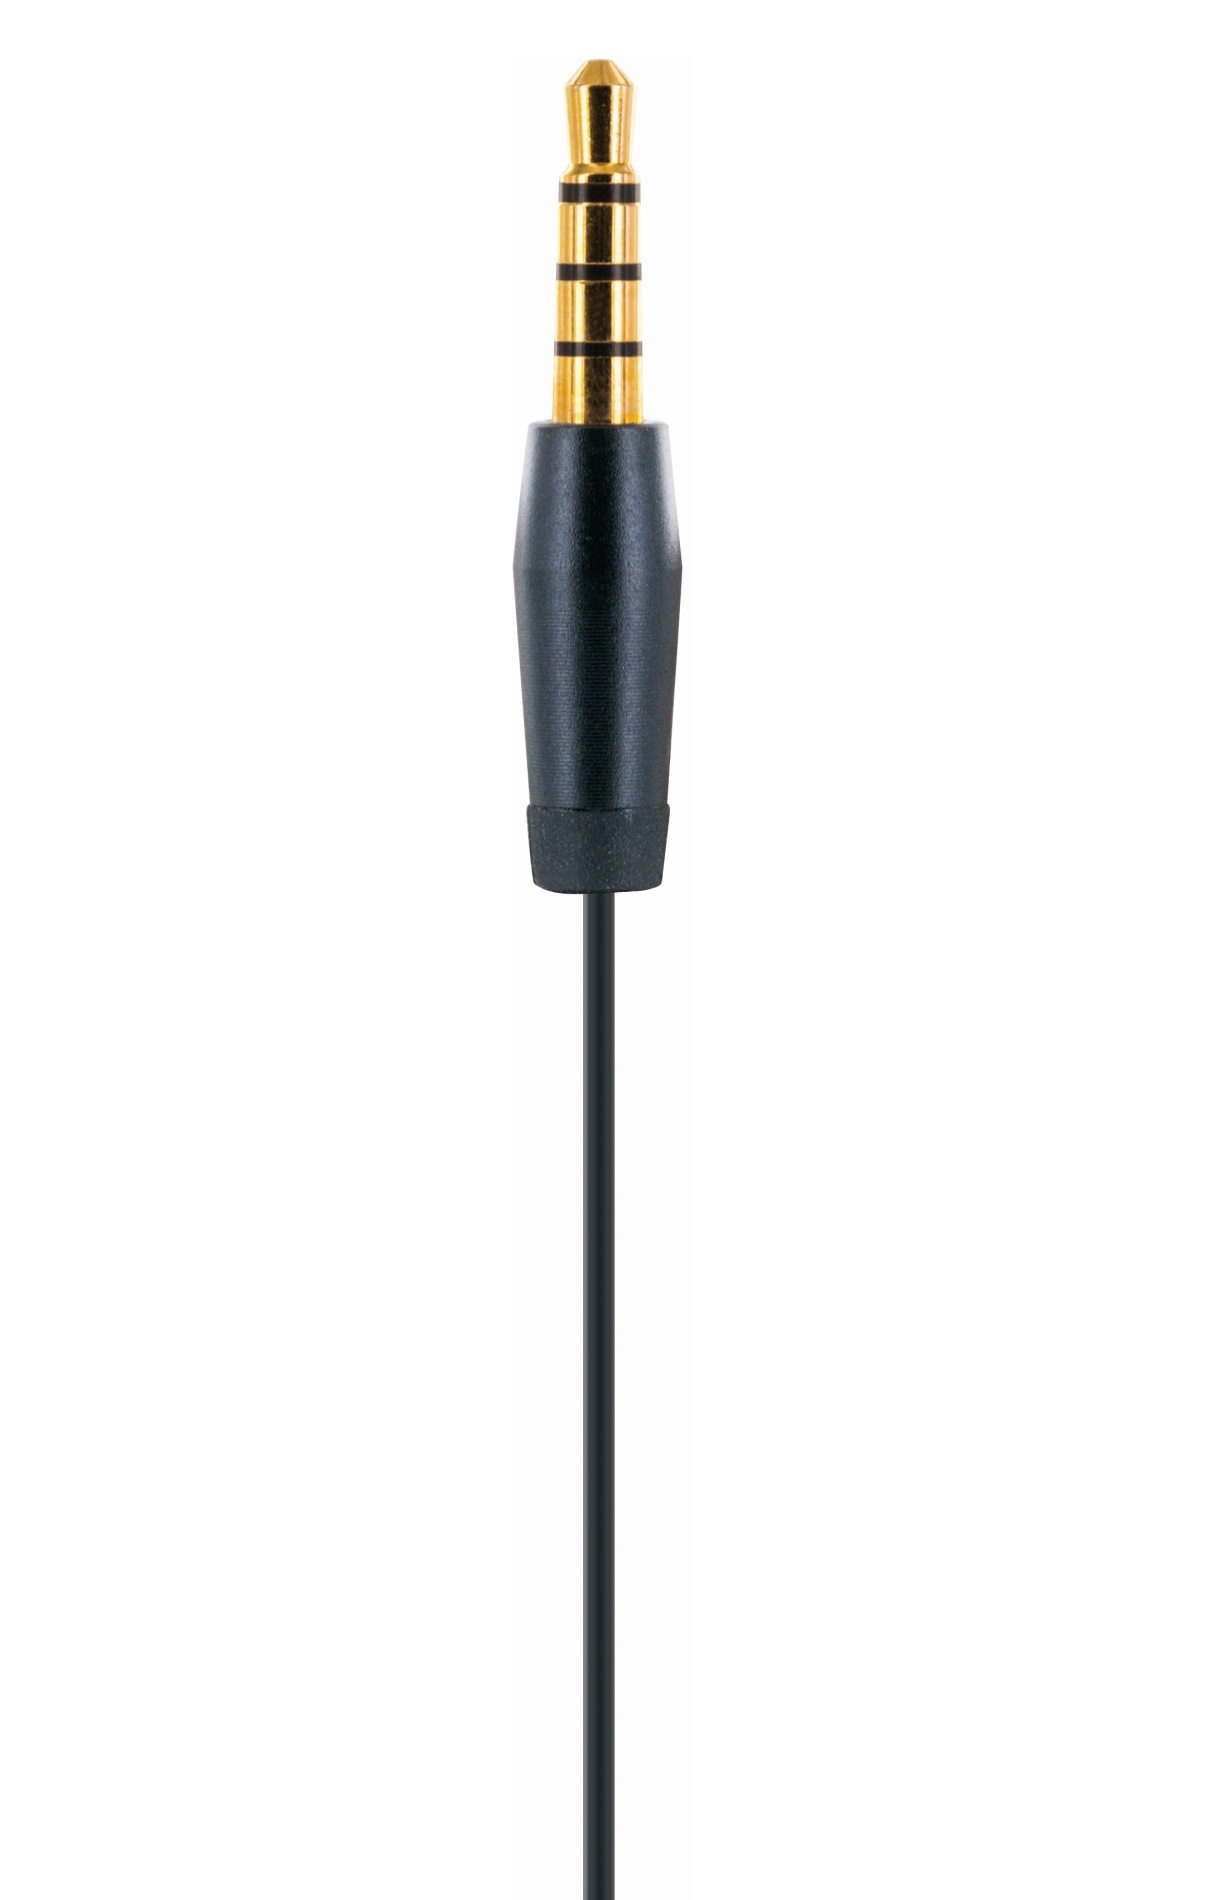 Slimkabel integriertem In-ear und SCHWAIGER Kopfhörer mit Mikrofon Schwarz -KH470S 513-,